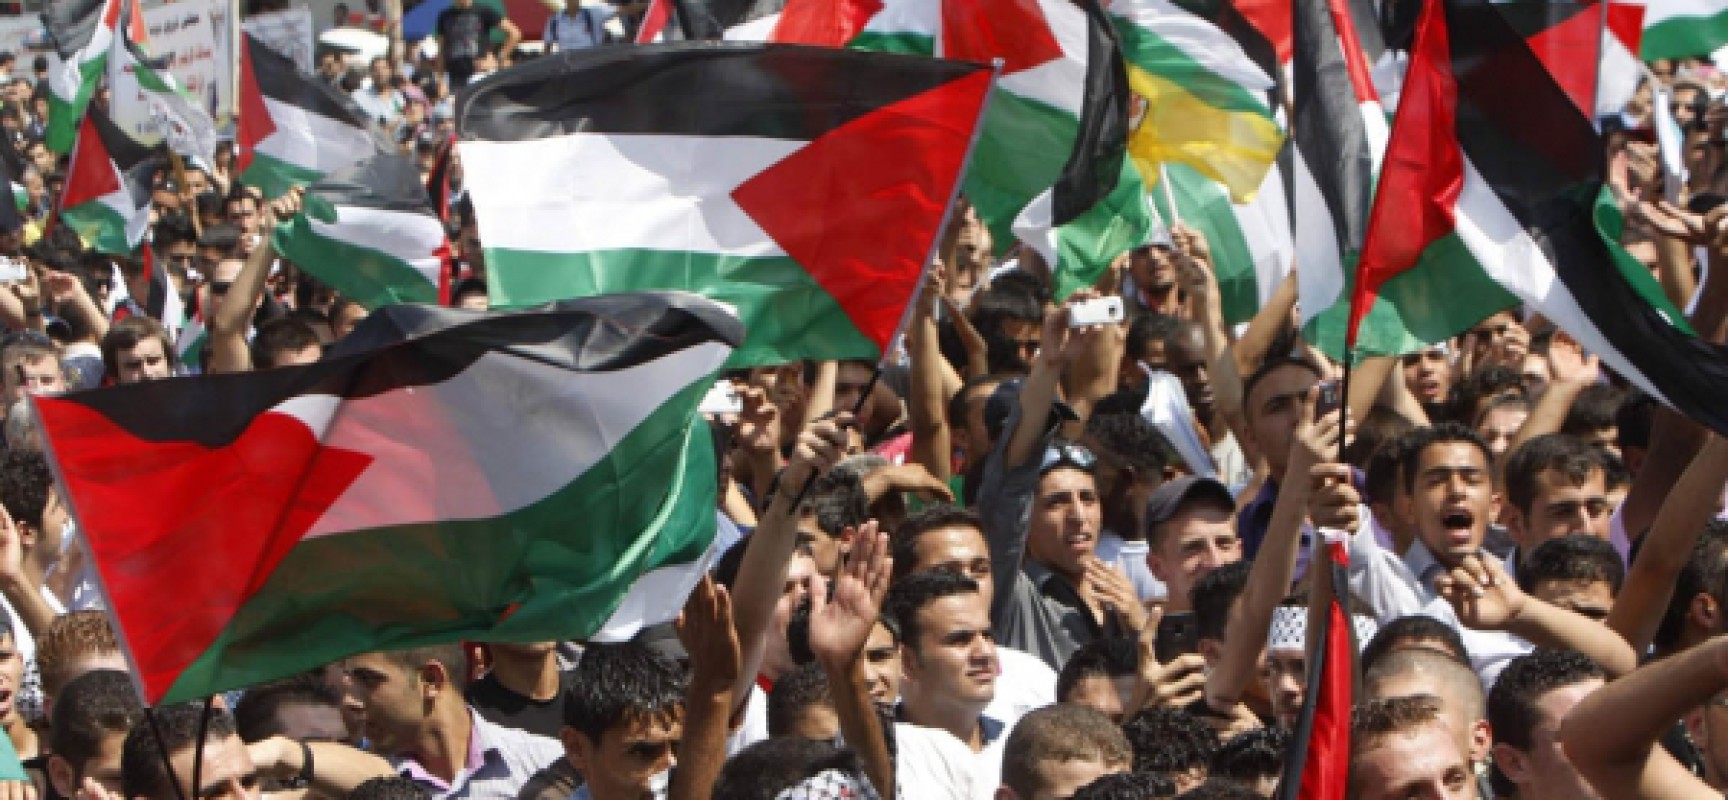 PALESTINE  - Page 4 Les-palestiniens-ont-manifeste-hier-dans-plusieurs-villes-cisjordanie-1728x800_c